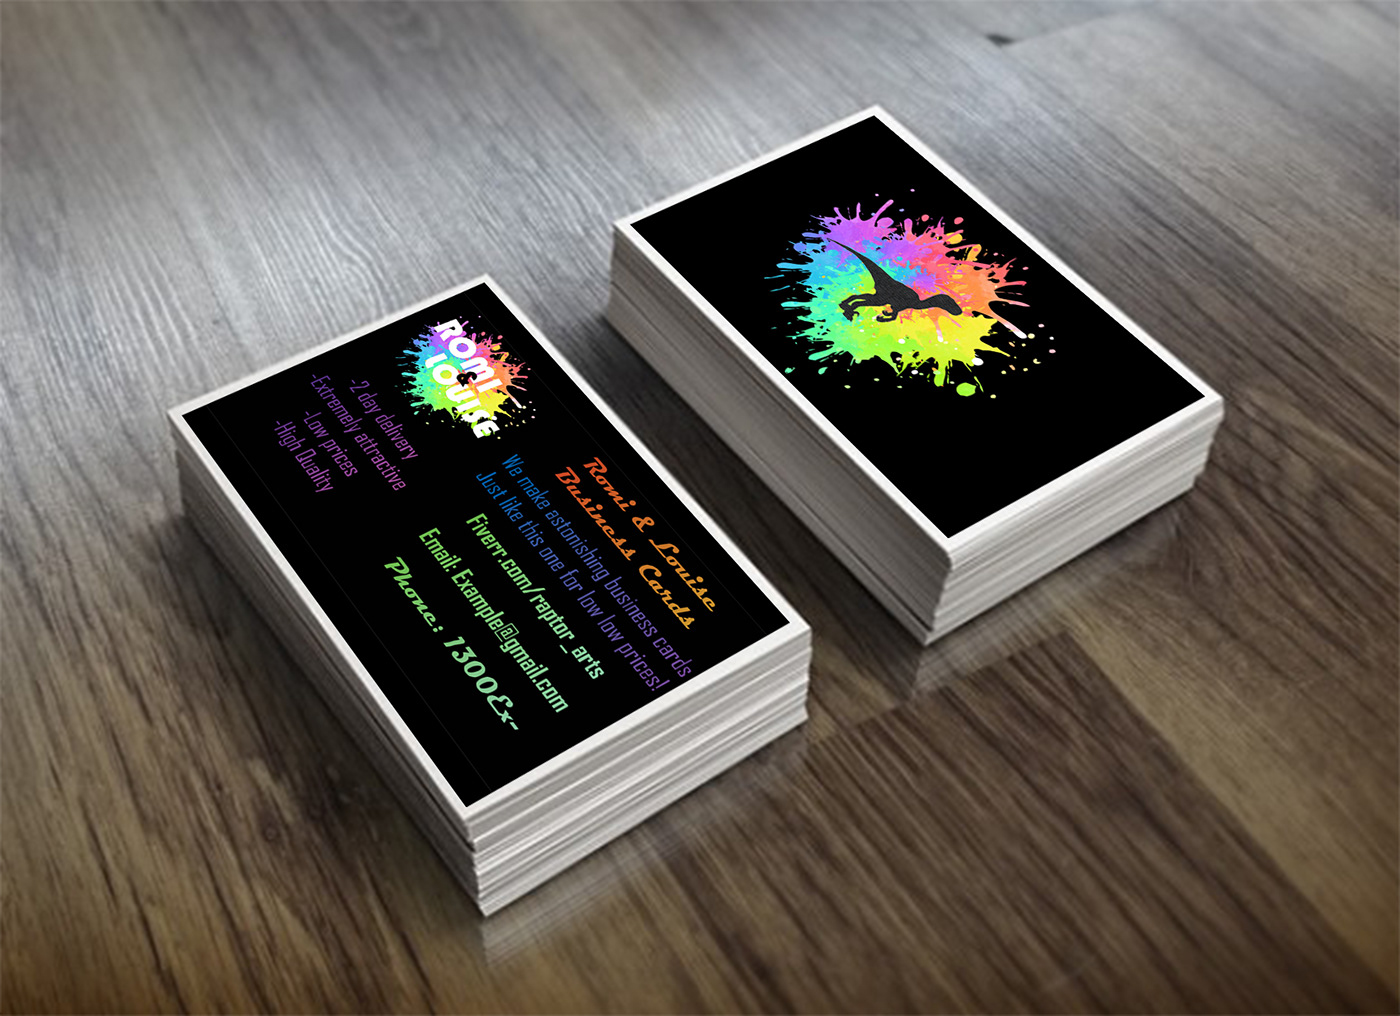 business business card Business card design Business Design card card design cohesive cool